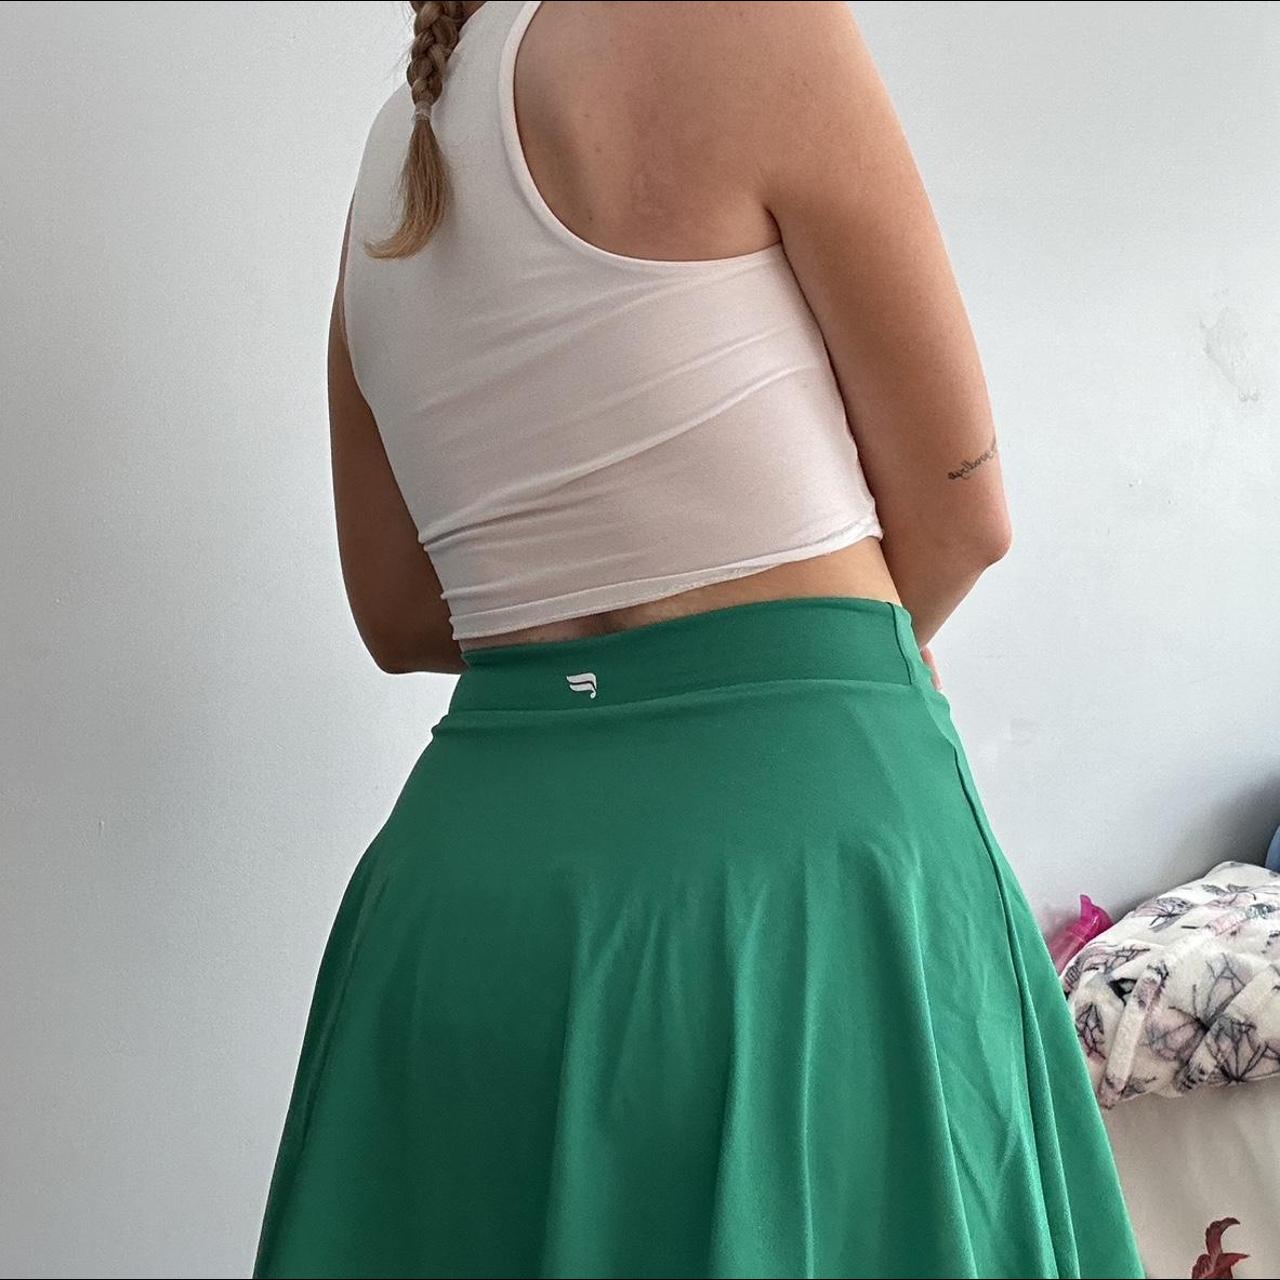 BNWT Fabletics green tennis skirt, retail $59, size XS - Depop